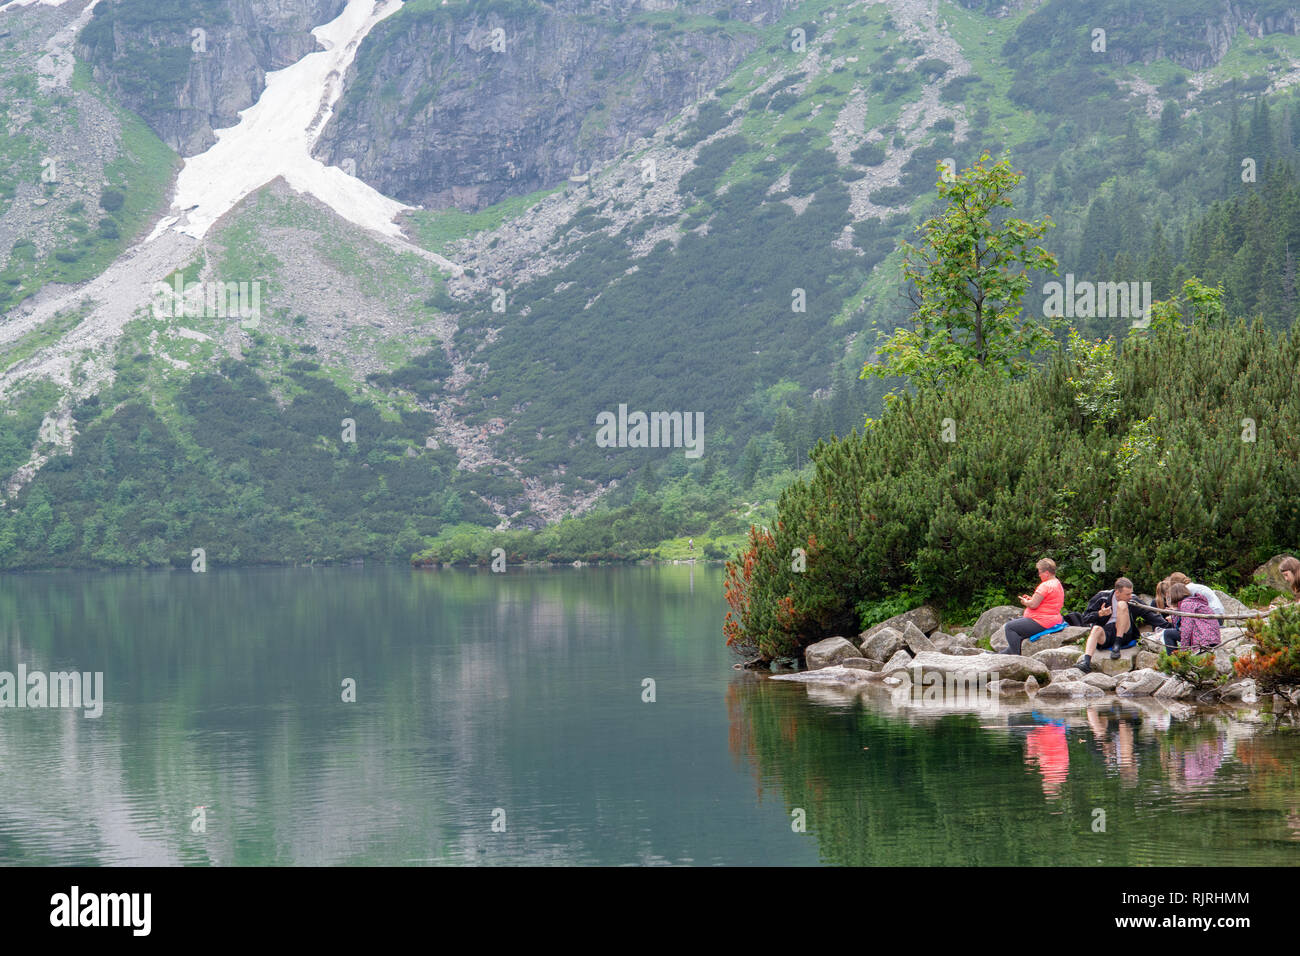 Ai visitatori di rilassarsi sulle sponde rocciose del Morskie Oko lago (l'occhio del mare) nelle montagne Tatra nel Parco nazionale dei Tatra,Piccola Polonia voivodato, Polan Foto Stock